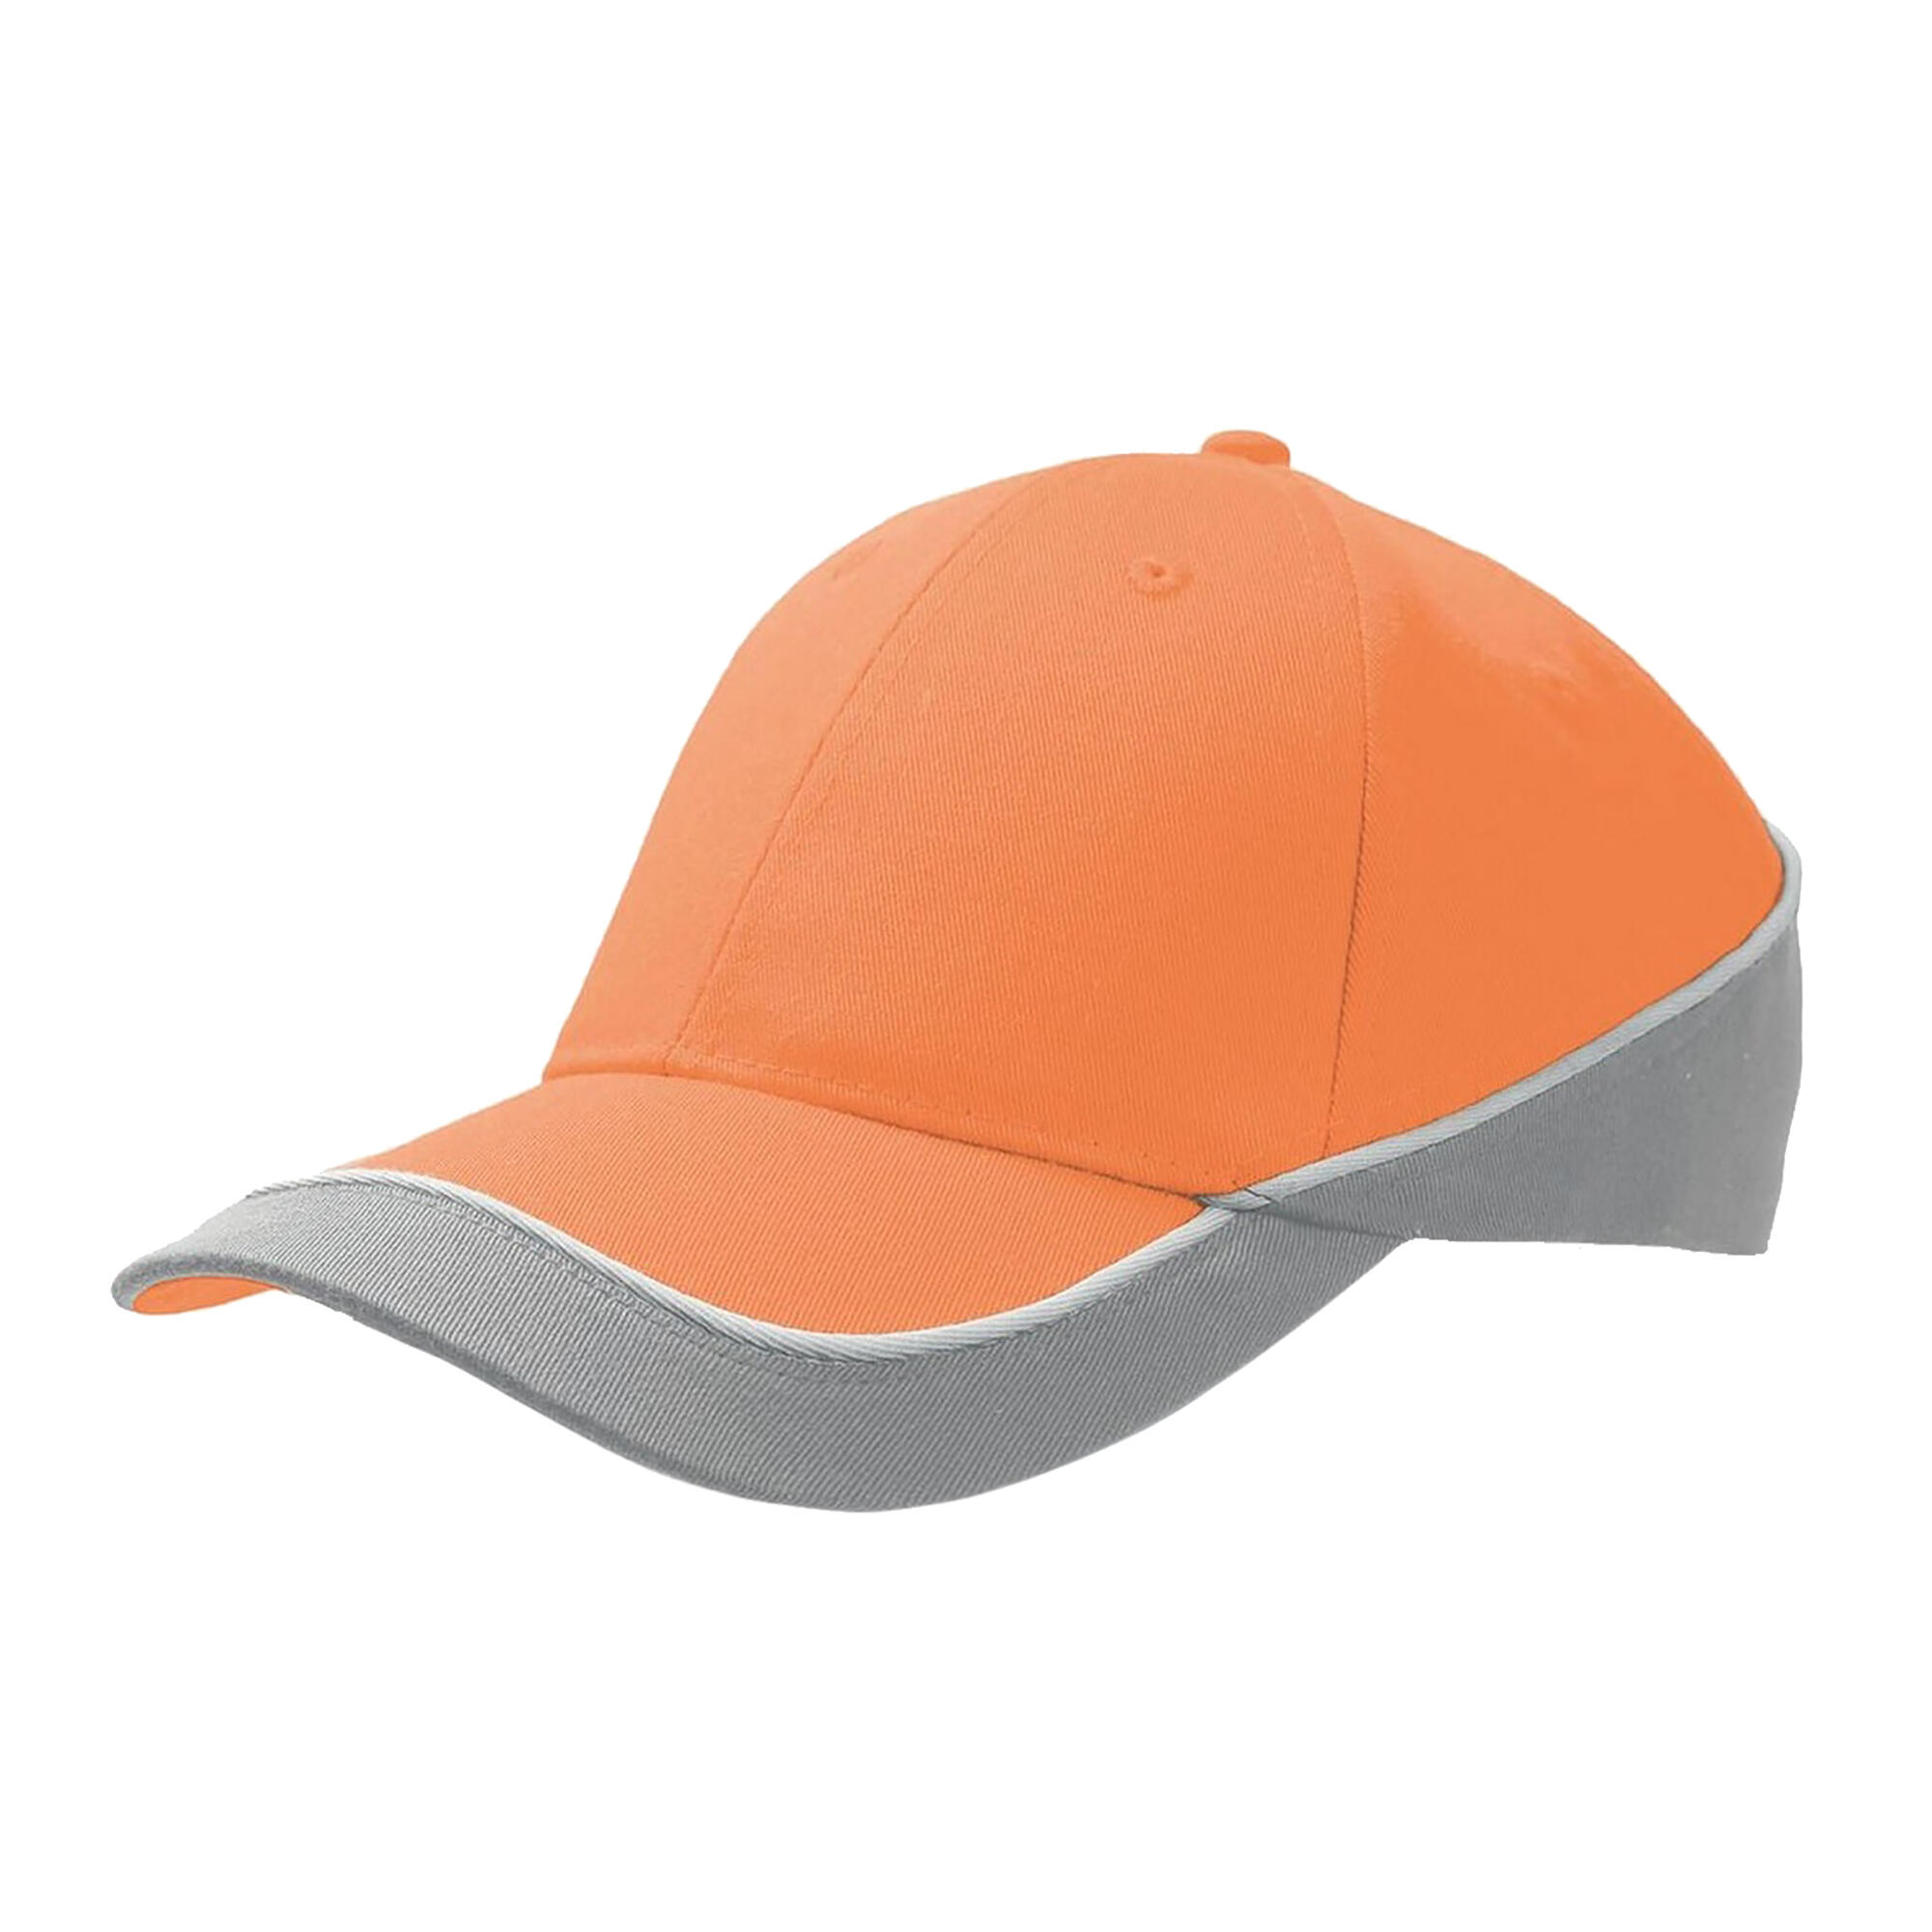 Racing Teamwear 6 Panel Cap (Orange/Grey) 1/4